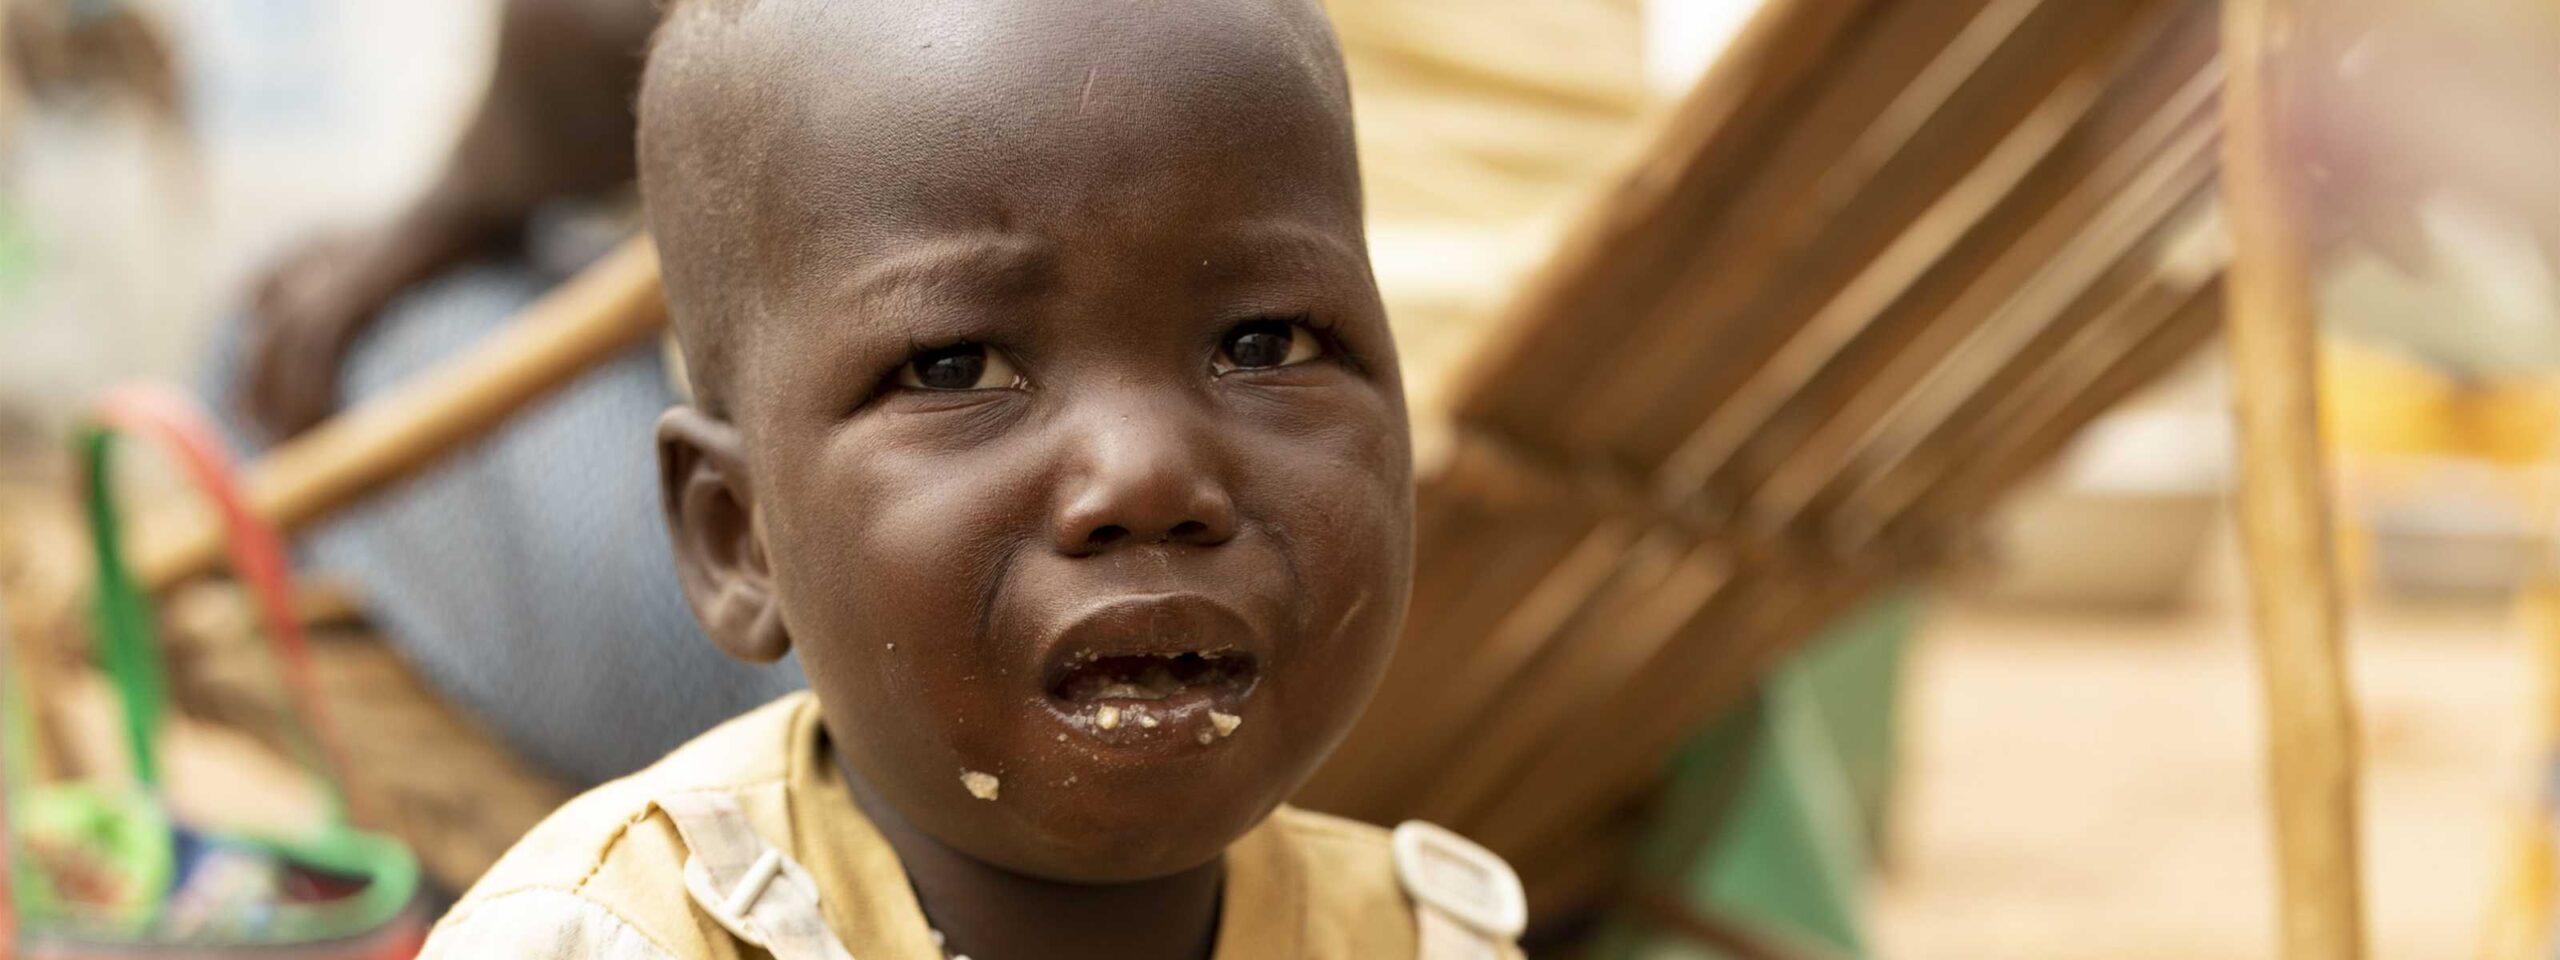 Climate-driven hunger crisis endangers 27 million children